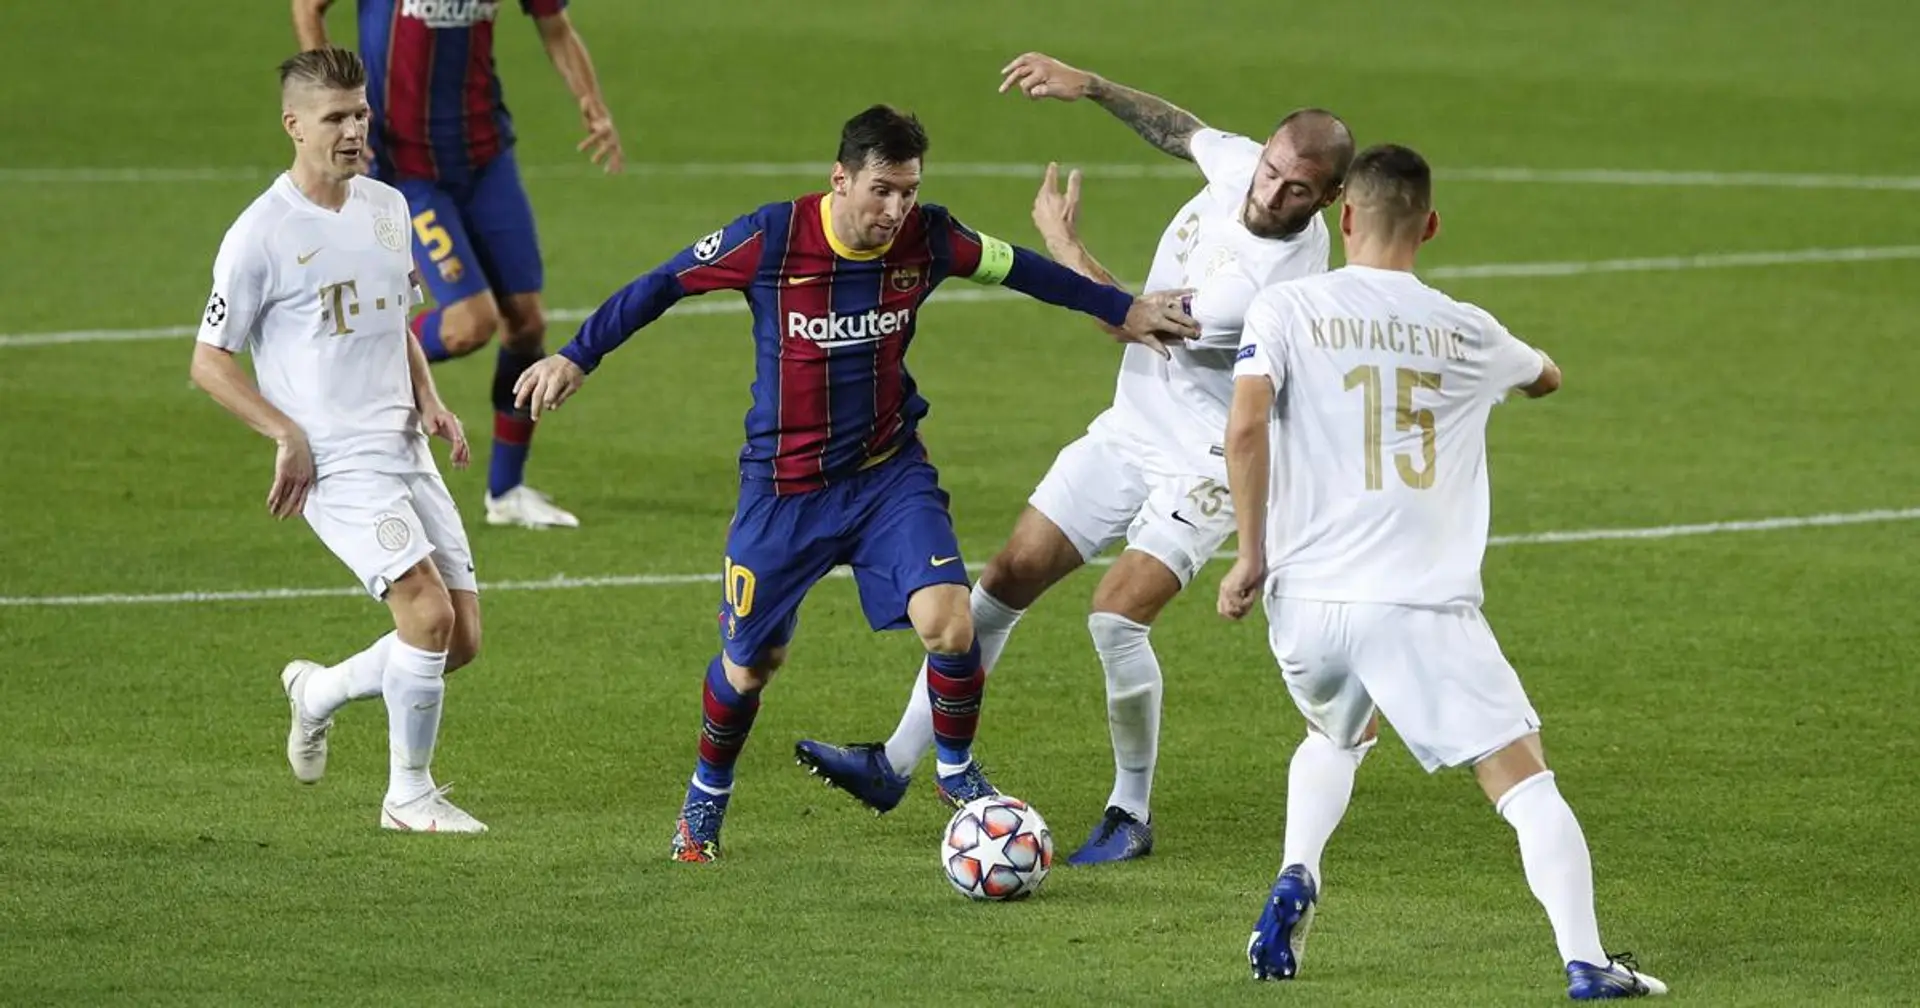 Los 5 equipos más desconocidos a los que se ha enfrentado Leo Messi, incluido uno al que no logró vencer